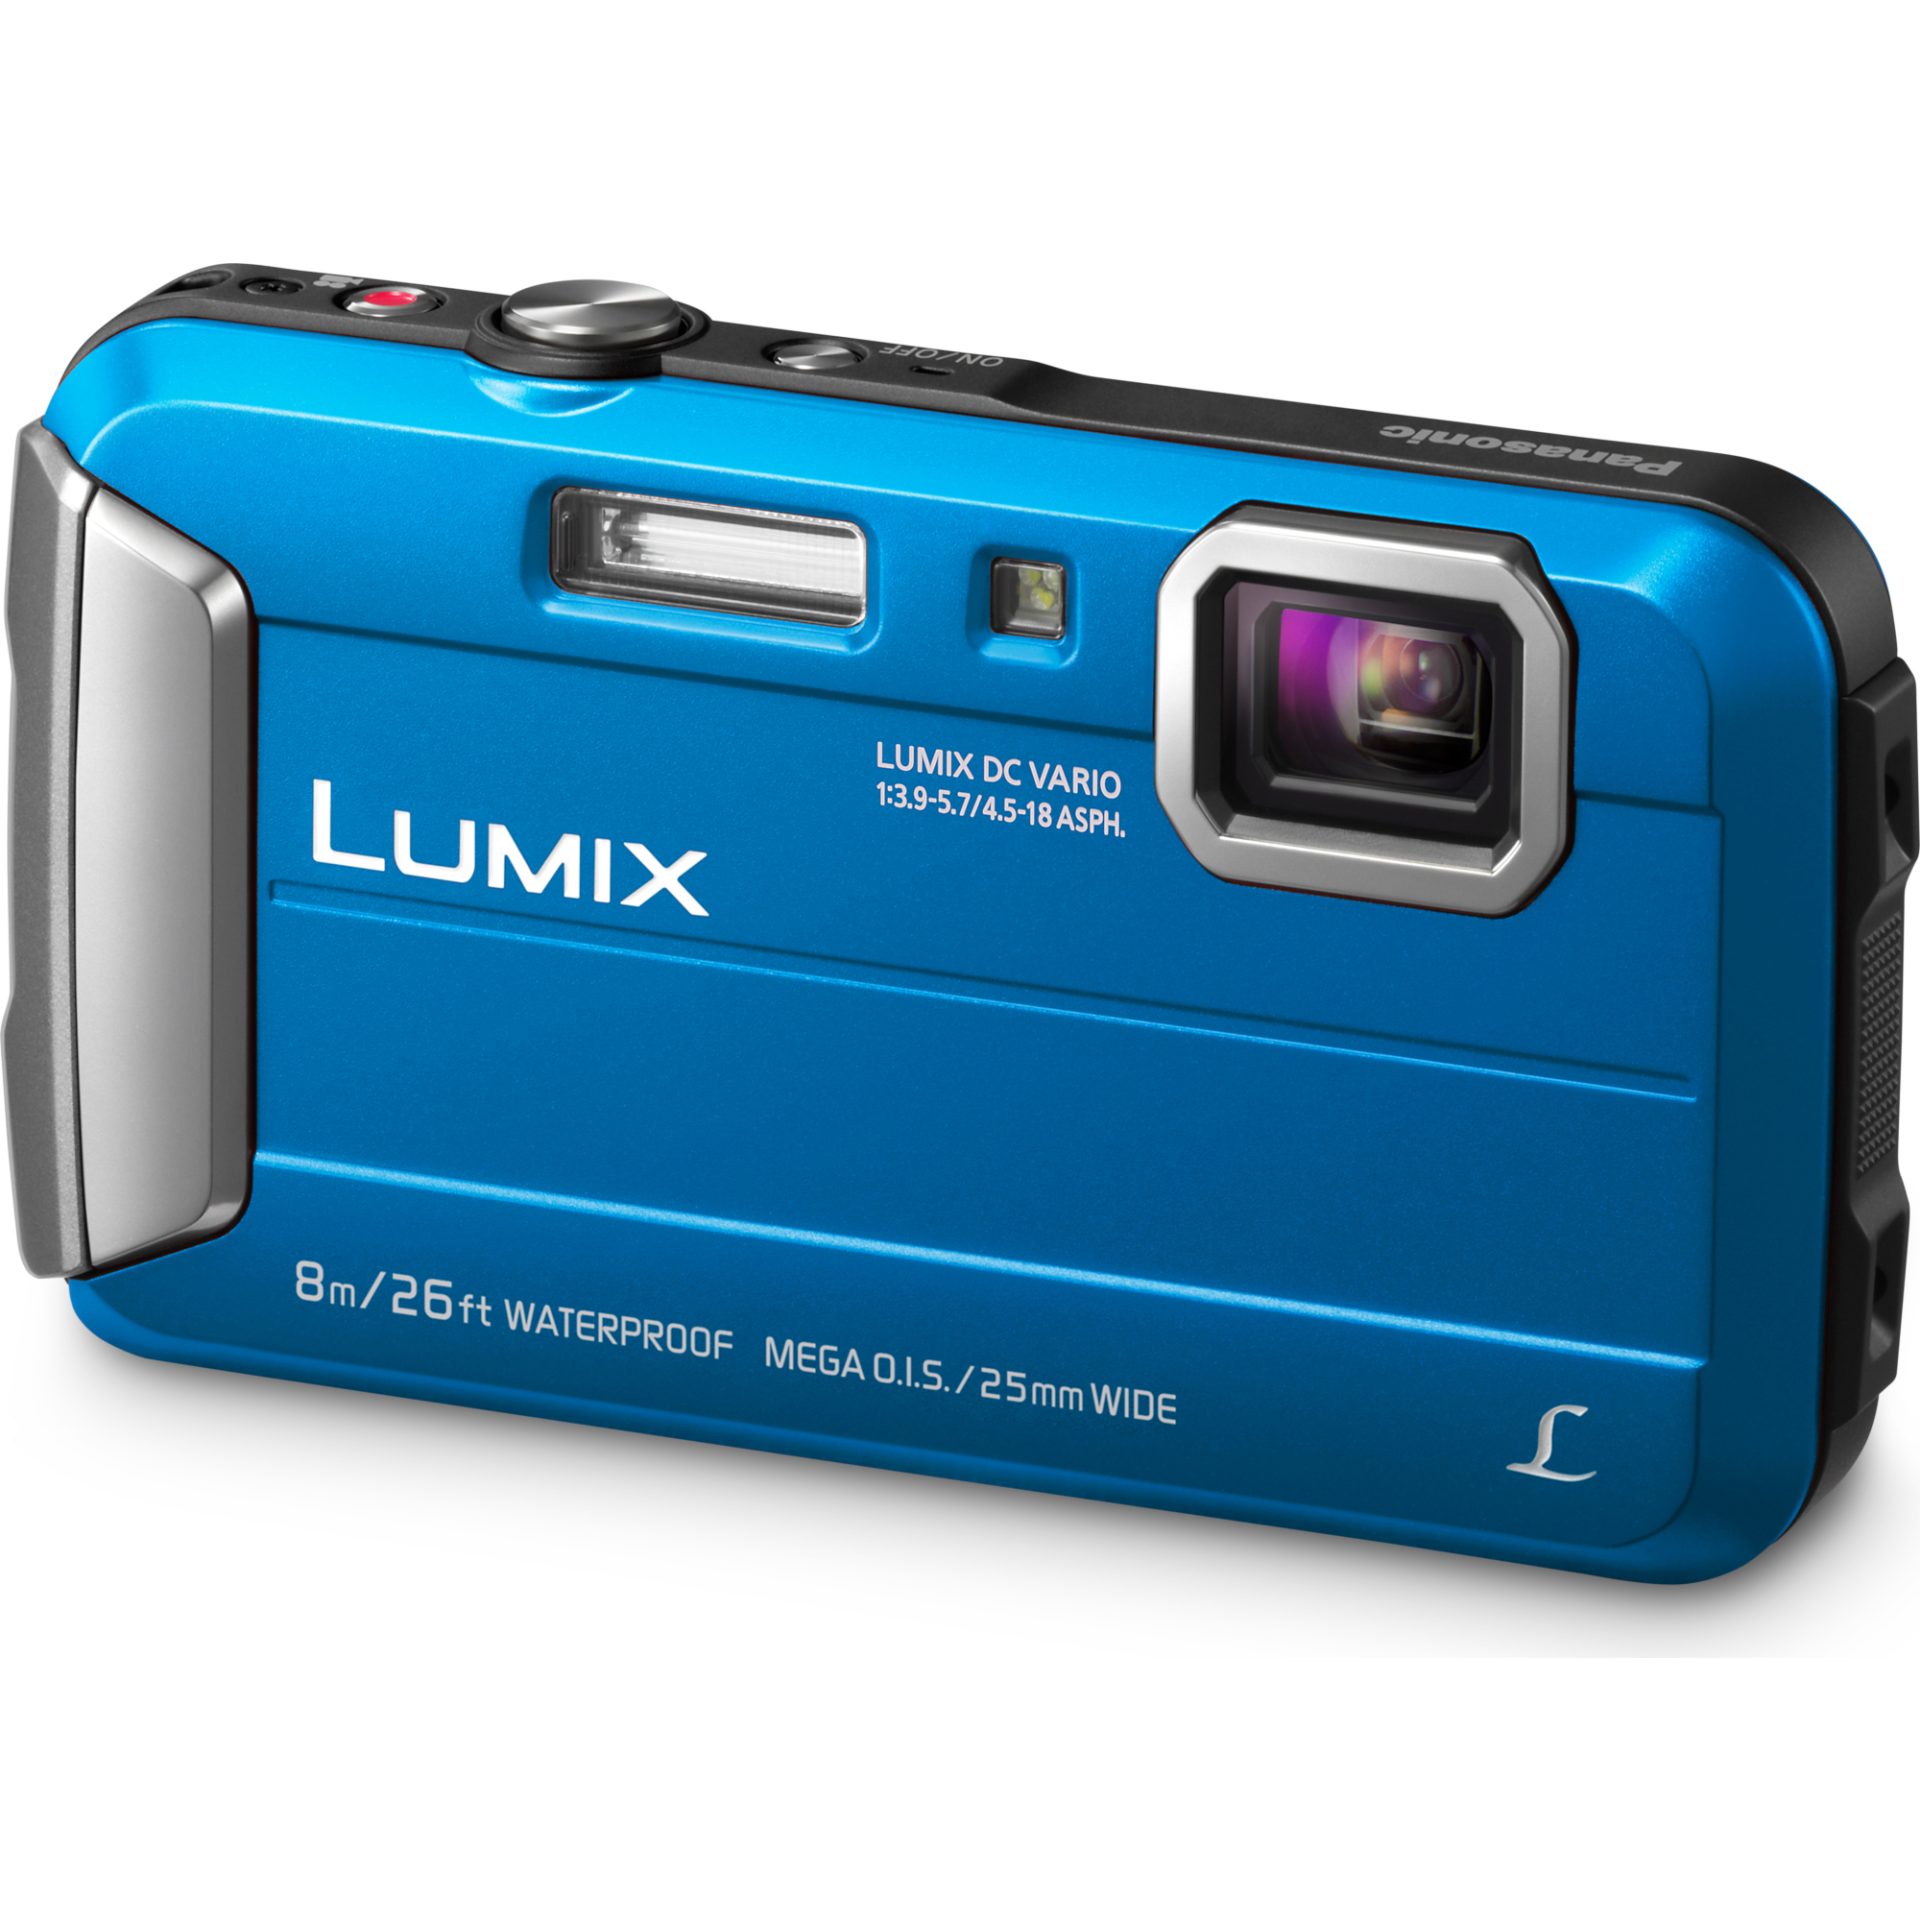 Panasonic DMC-FT30 Lumix fotoaparát (vodotěsný až 8m, nárazuvzdorný a mrazuvzdorný, 220MB mega MP4 HD video), modrá » Značkový obchod Panasonic